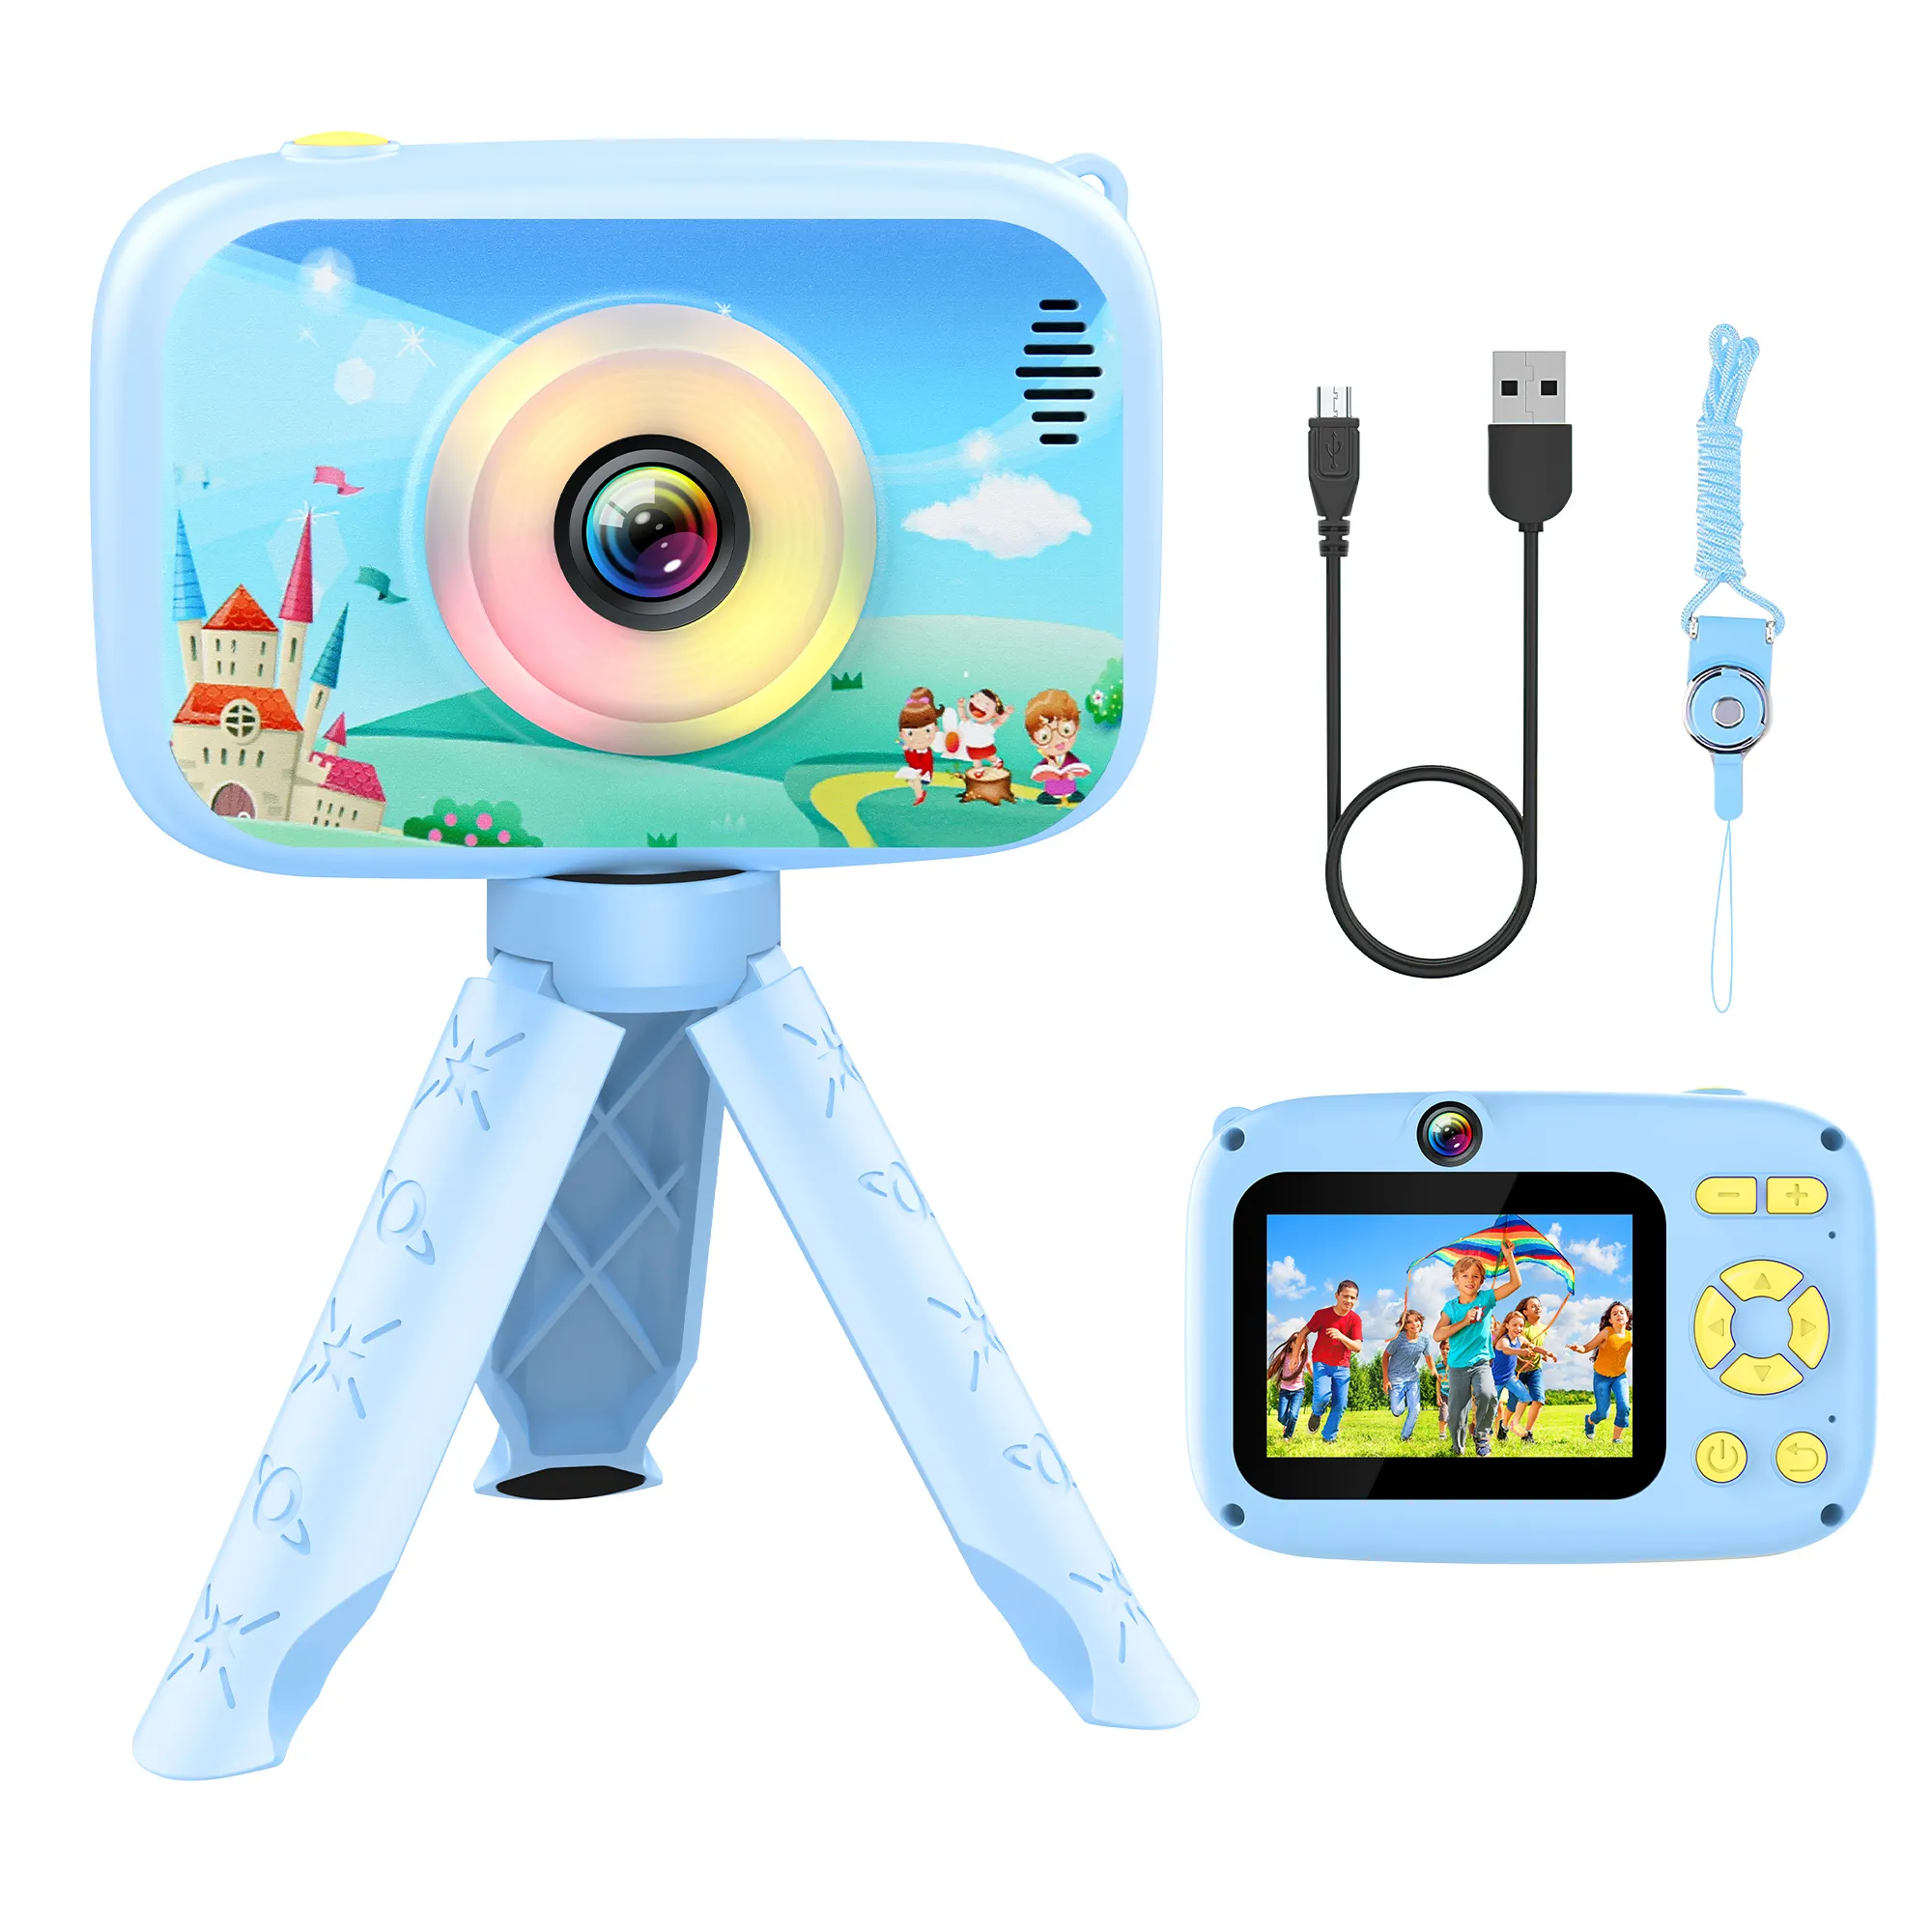 Kamera mainan anak, tipe tombol untuk anak laki-laki dan perempuan usia 3-12 tahun, kamera Video Digital portabel anak-anak hadiah Natal ulang tahun